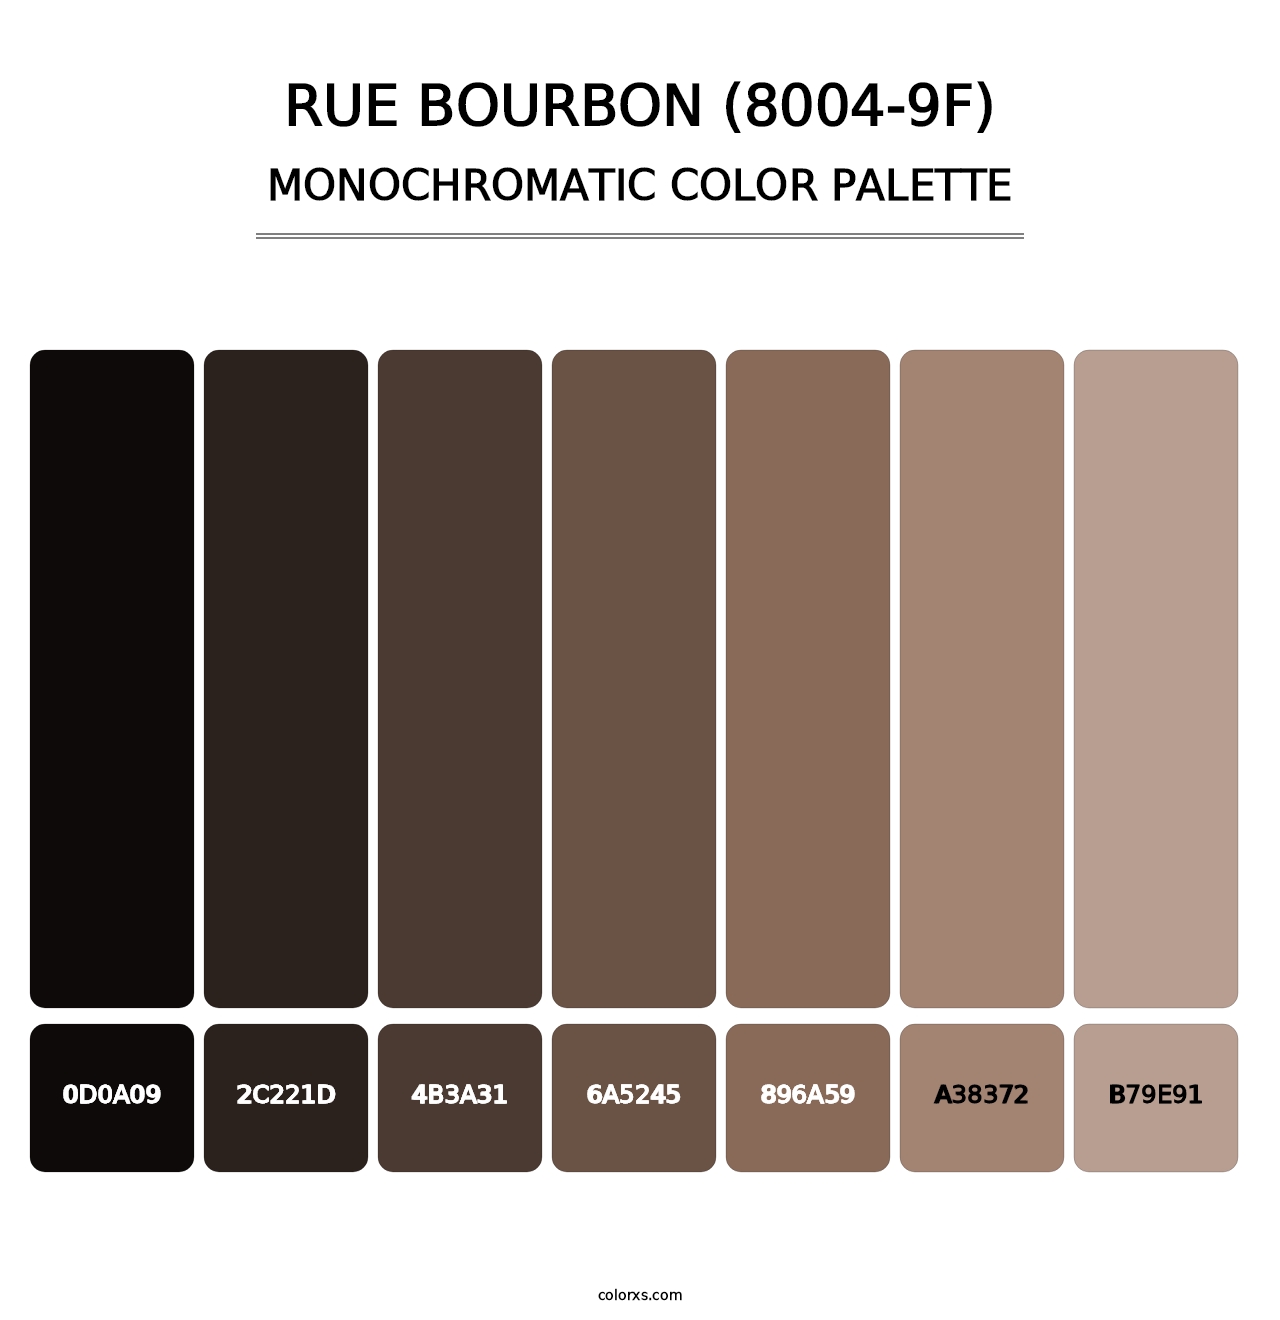 Rue Bourbon (8004-9F) - Monochromatic Color Palette